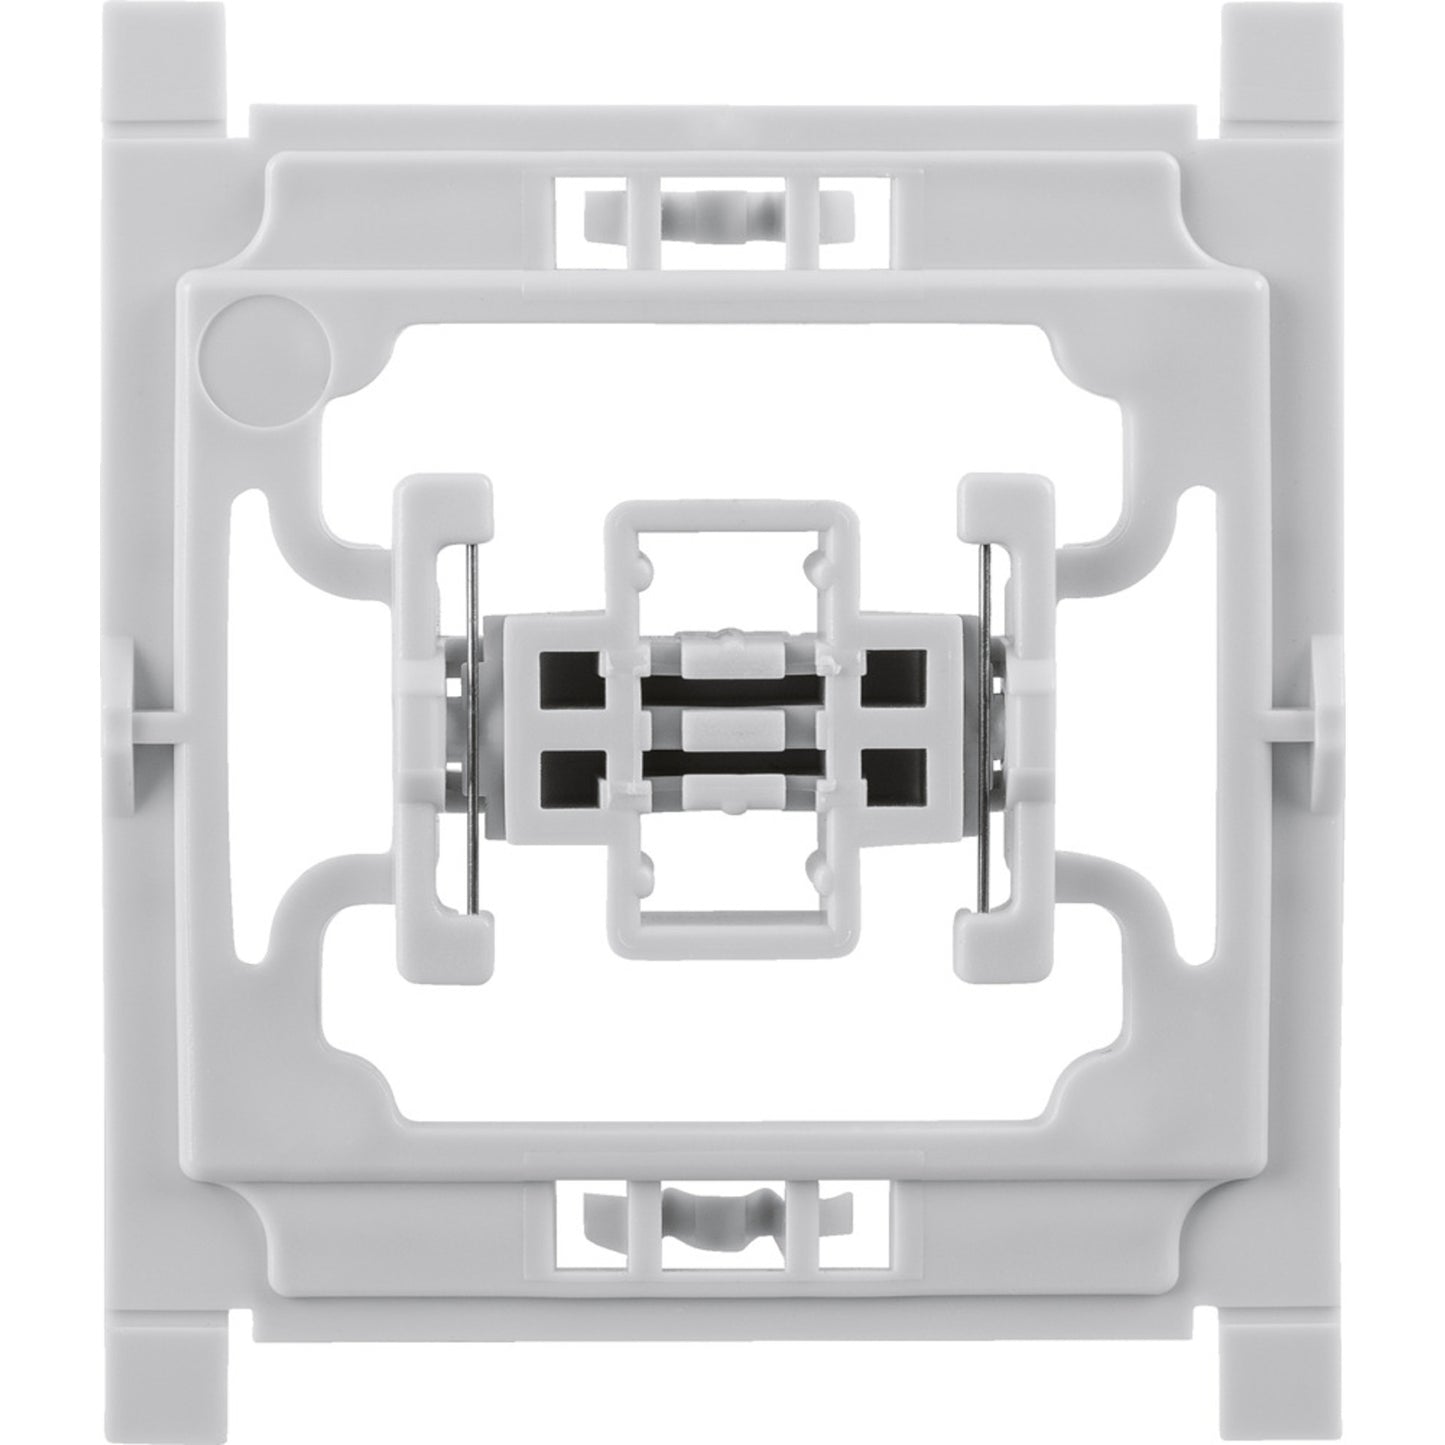 Installationsadapter für Siemens-Schalter, 1er-Set für Smart Home / Hausautomation